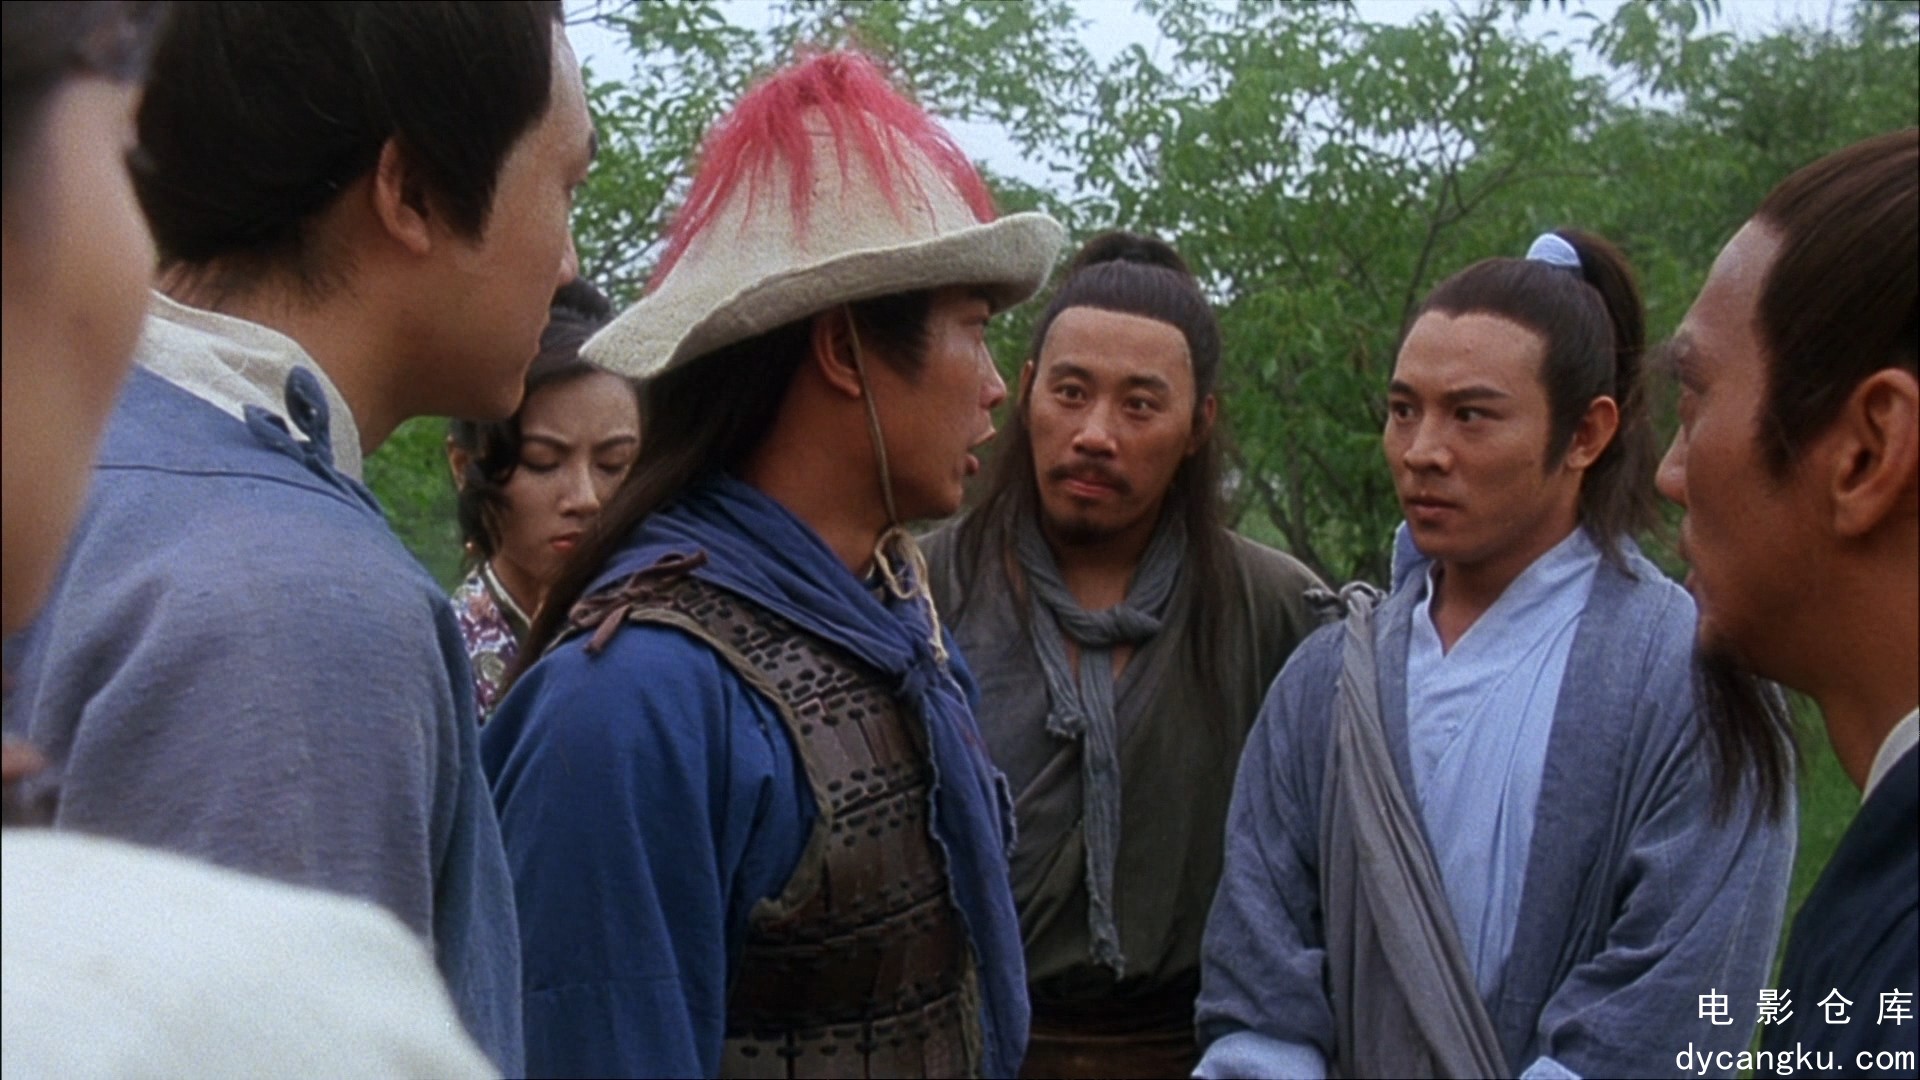 [电影仓库dycangku.com]The.Tai-Chi.Master.1993.BluRay.1080p.AVC.DD5.1.mkv_snapsho.jpg